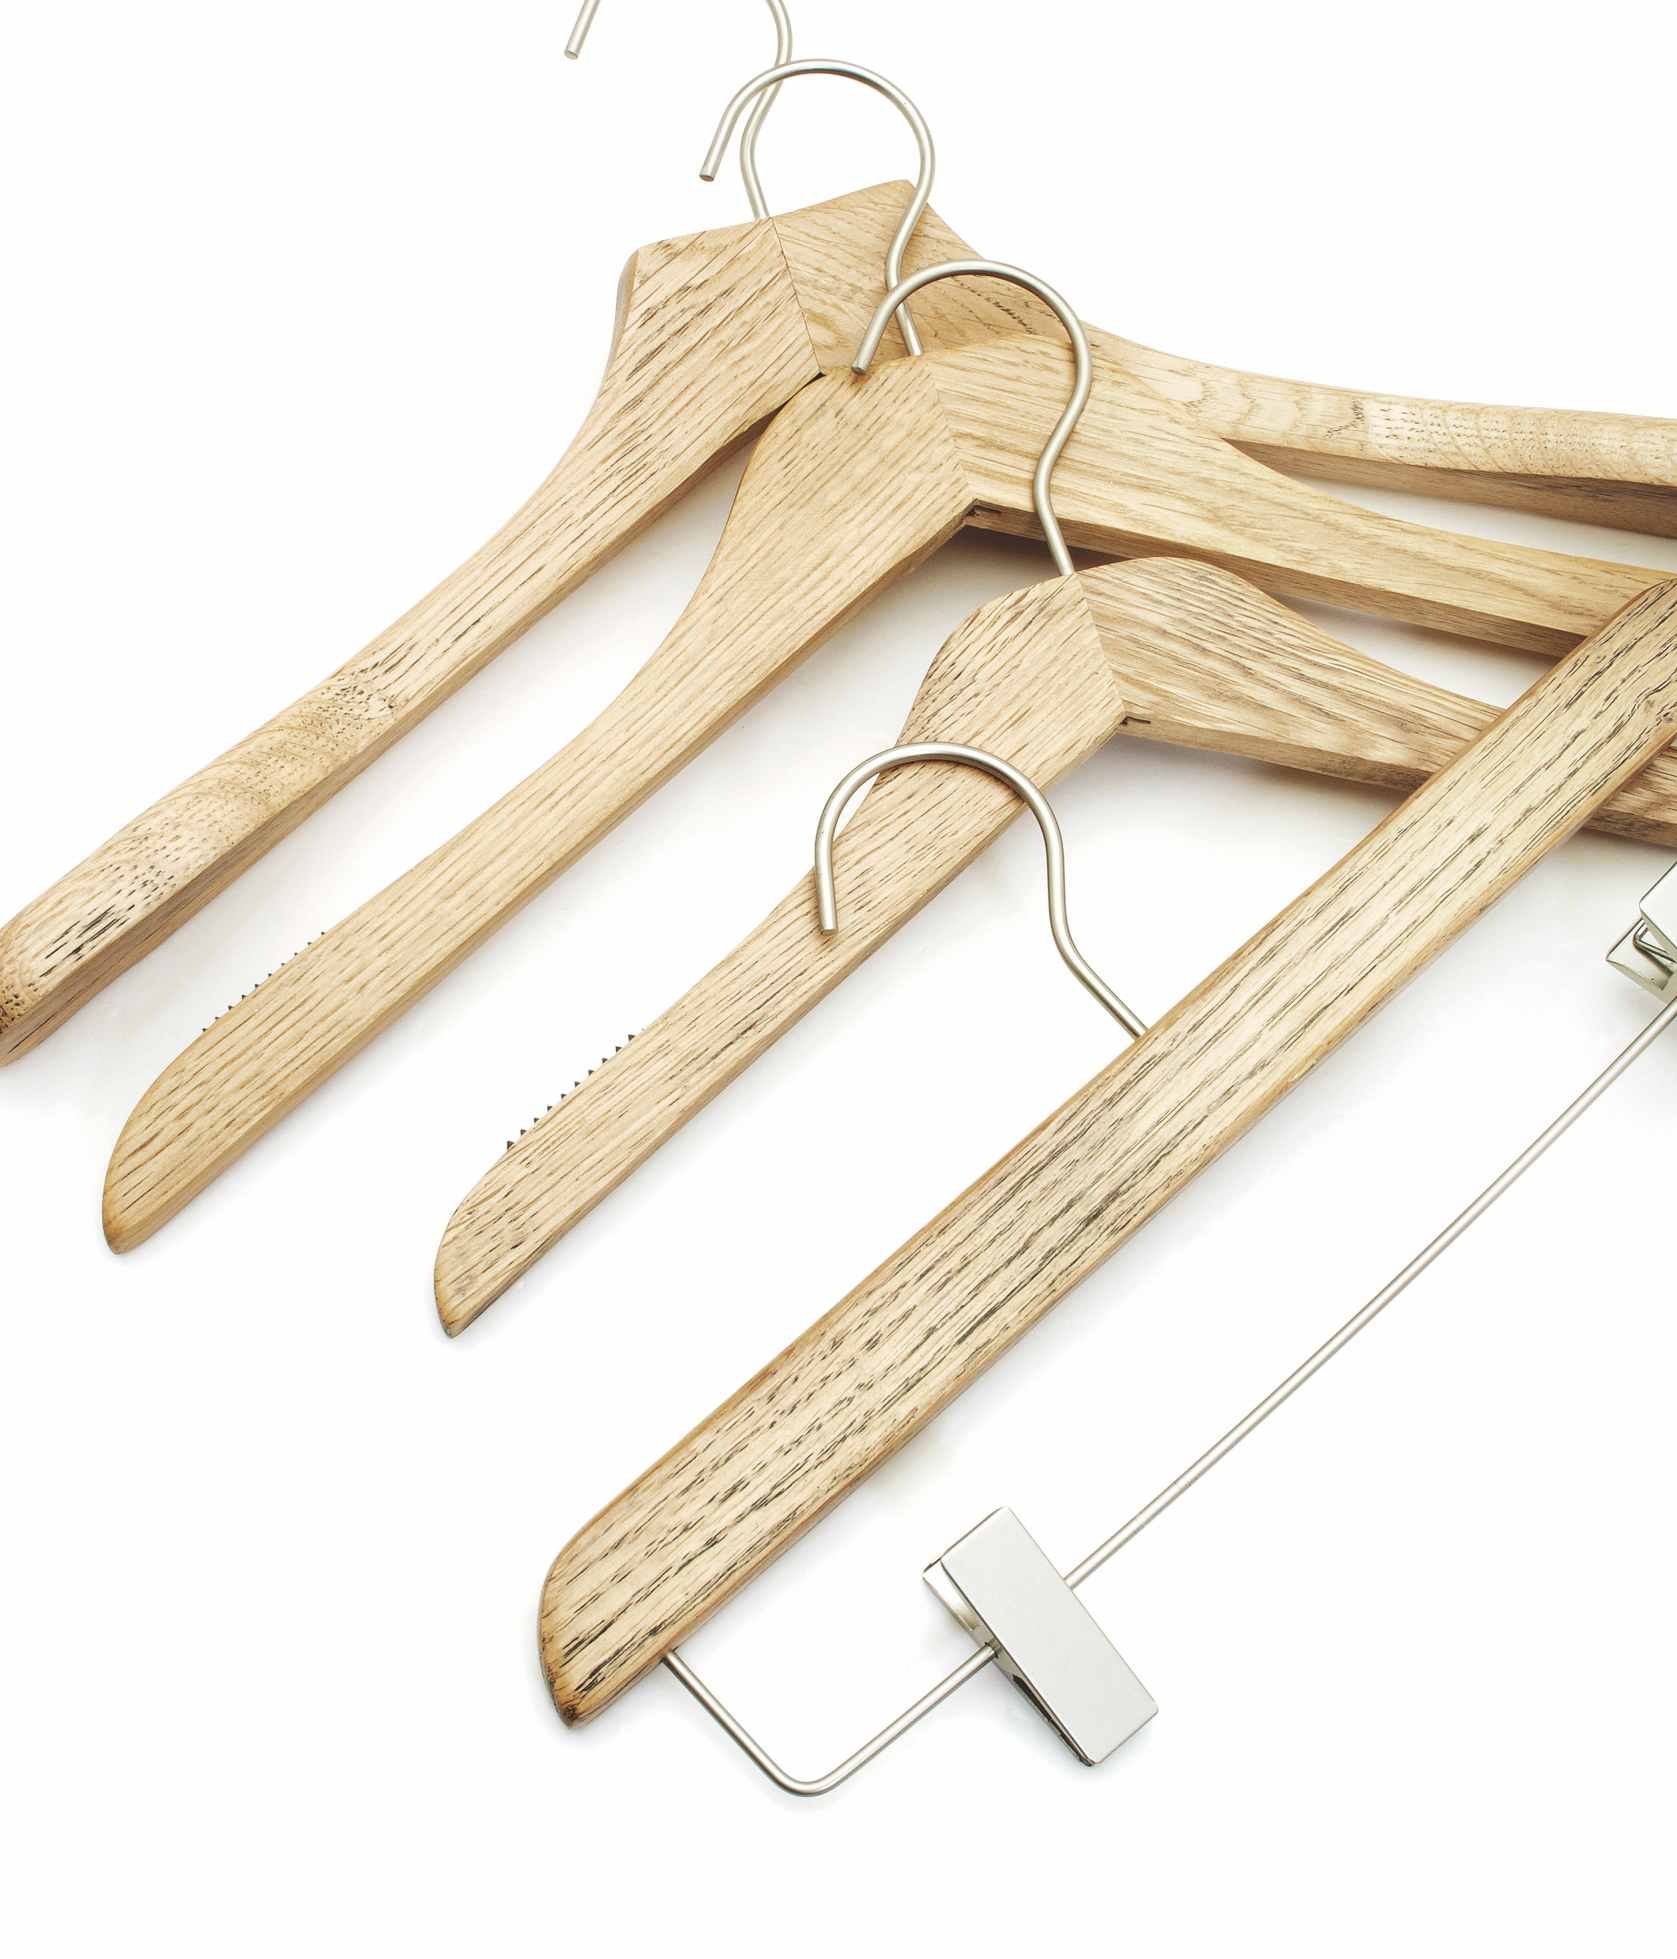 Wood Hangers